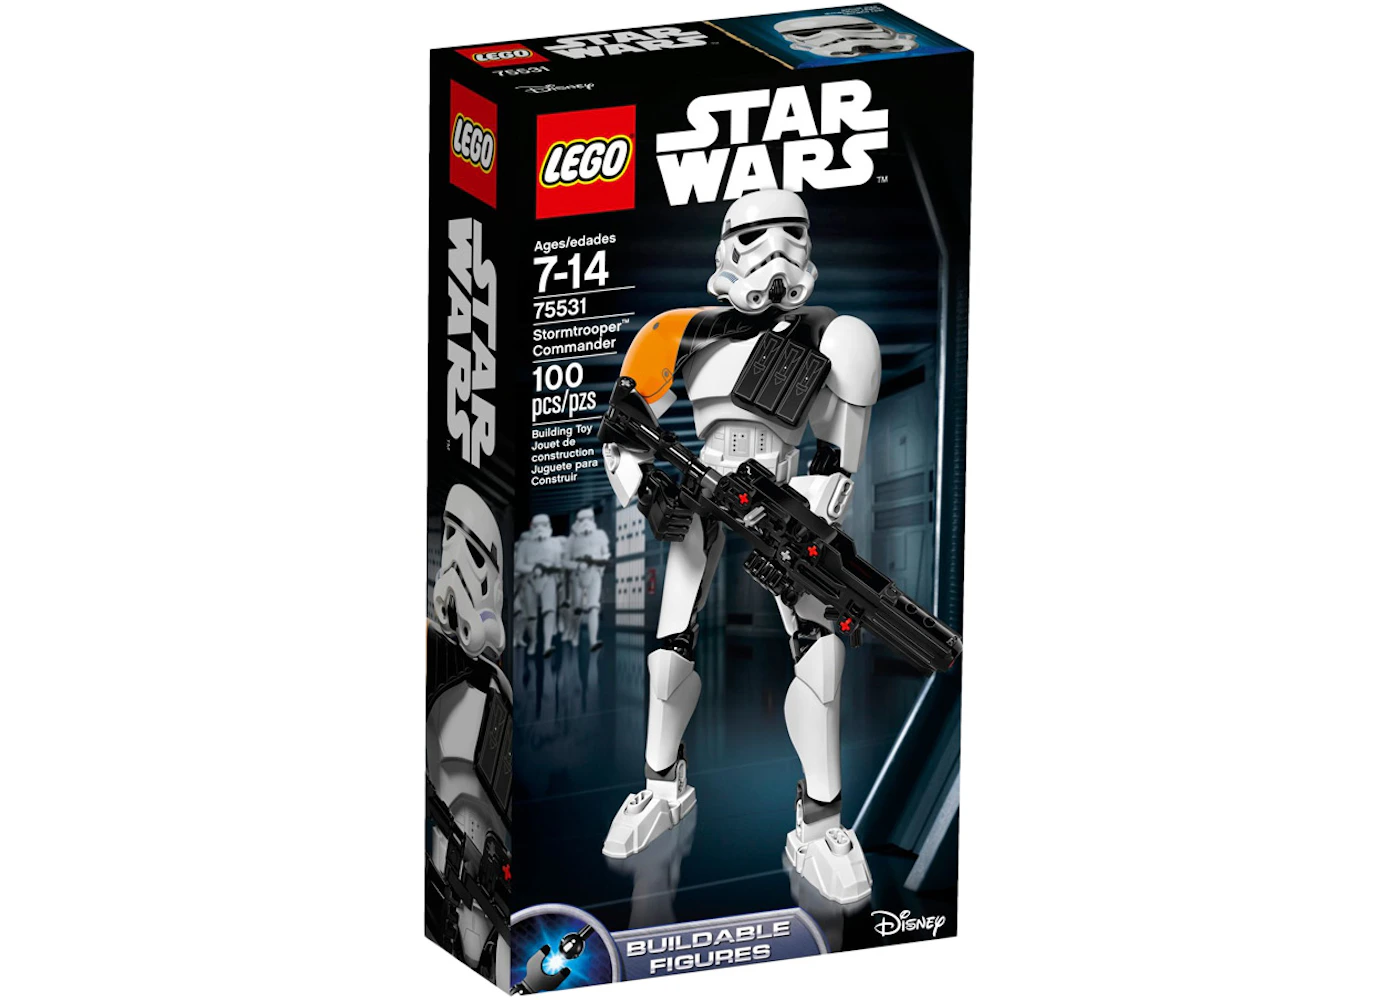 voks overrasket Supermarked LEGO Star Wars Stormtrooper Commander Set 75531 - US